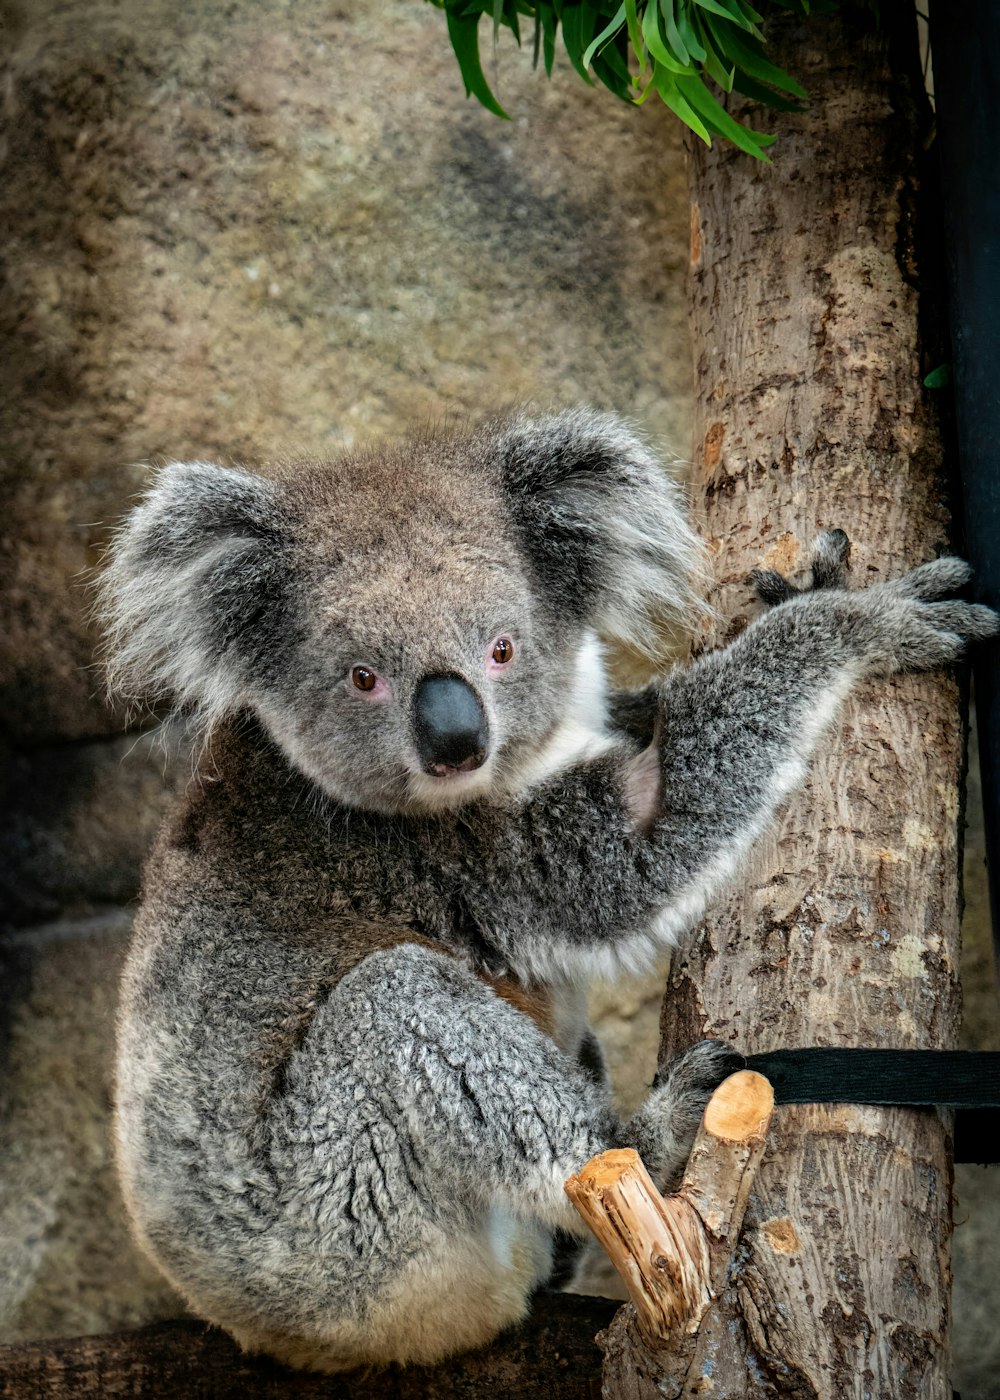 a koala bear sitting on a tree branch